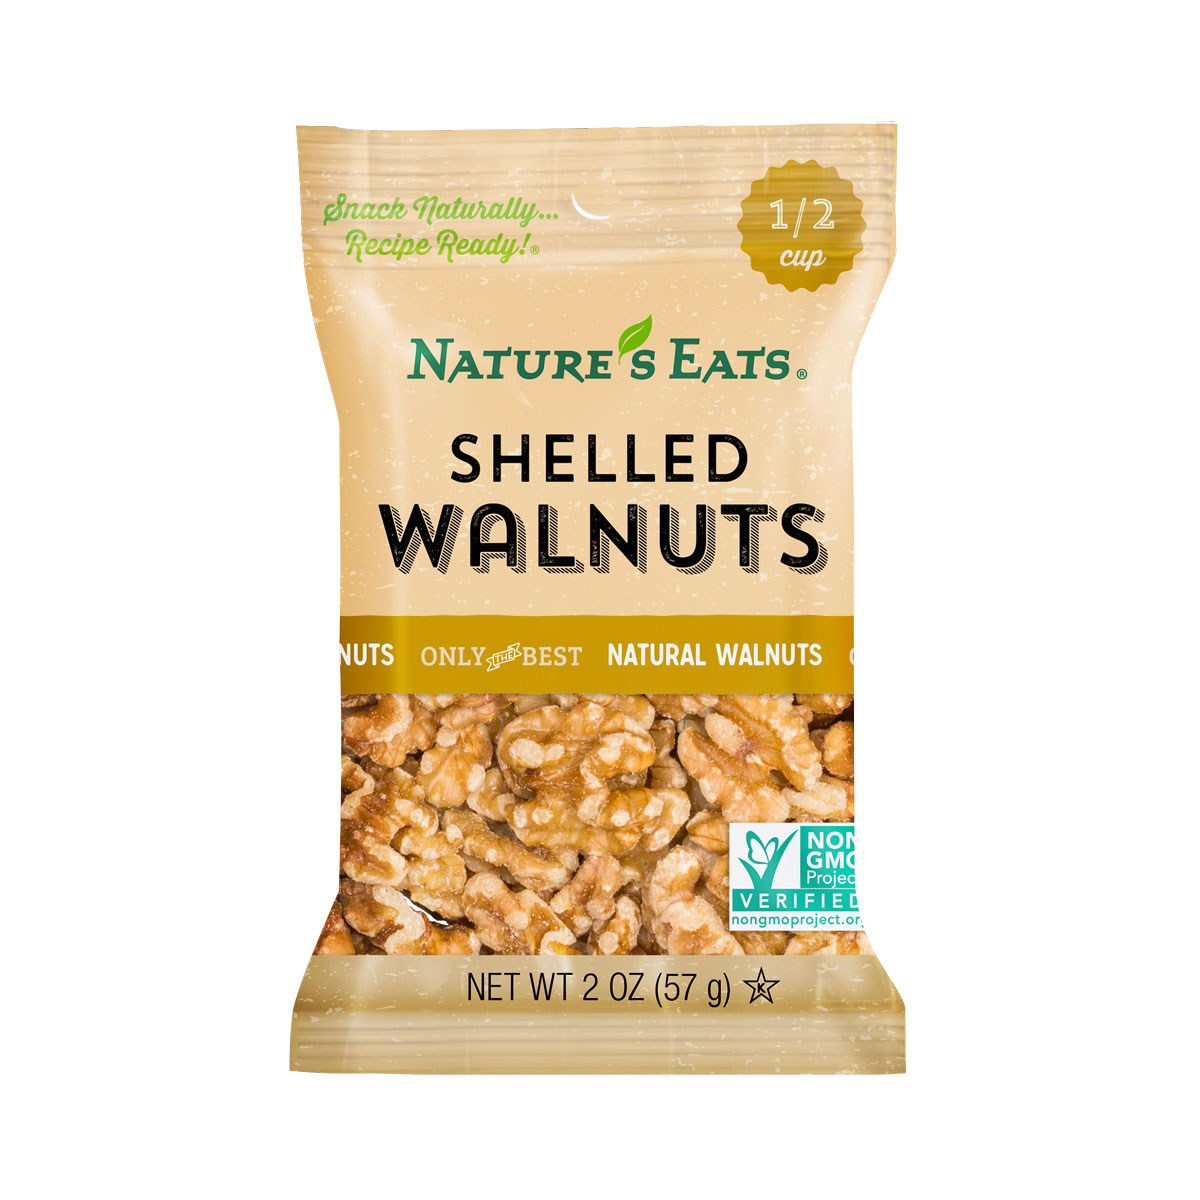 shelled-walnuts-neb-2oz.jpg